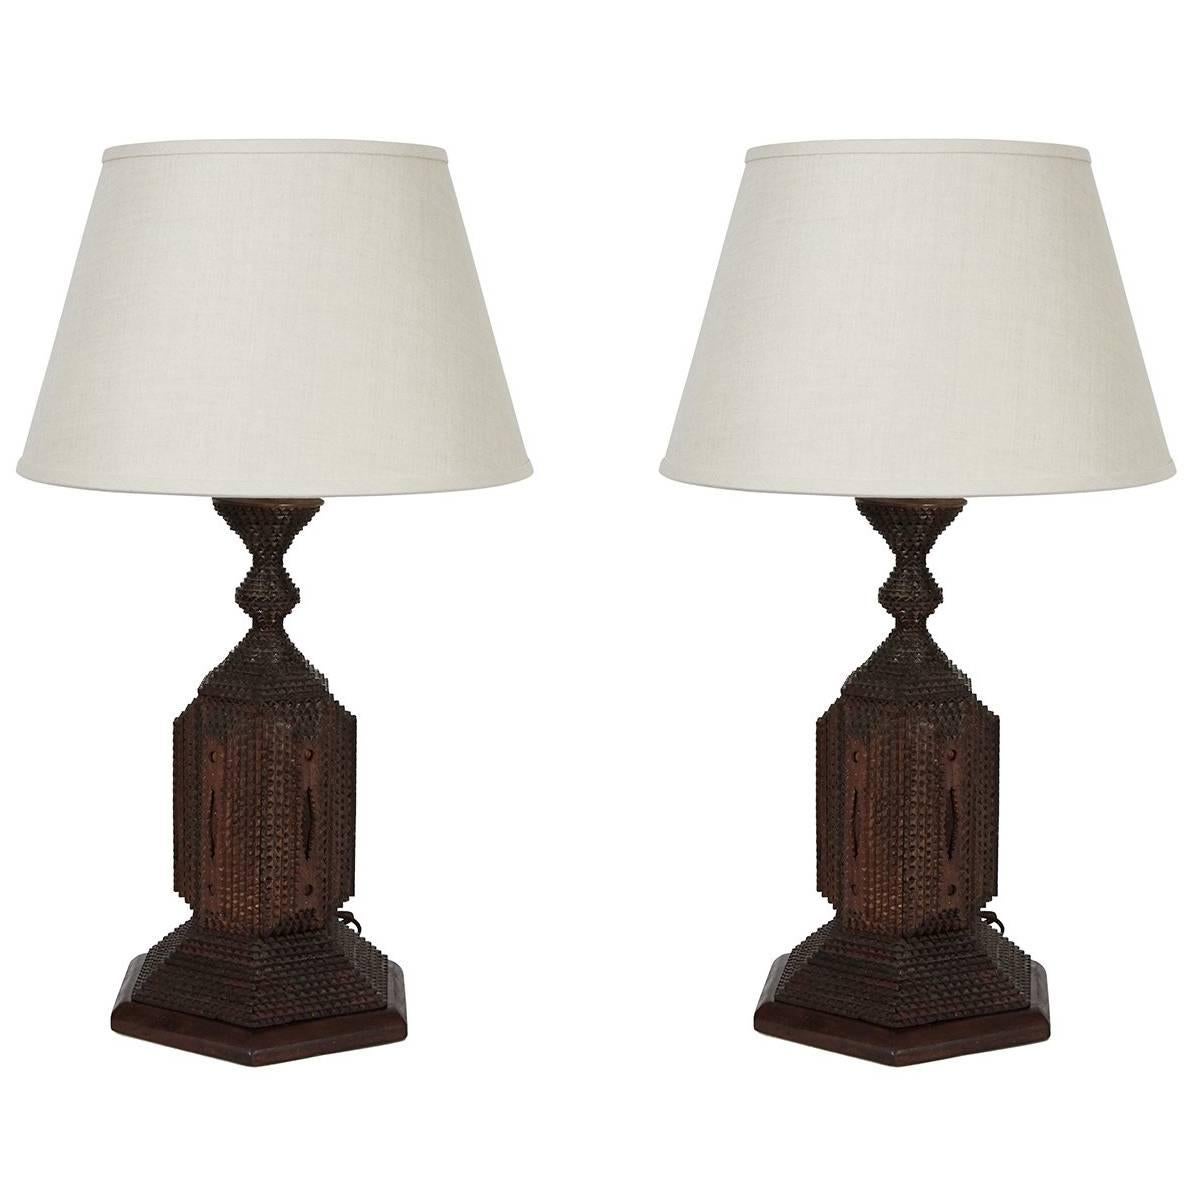 Pair of Large Tramp Art Lamps